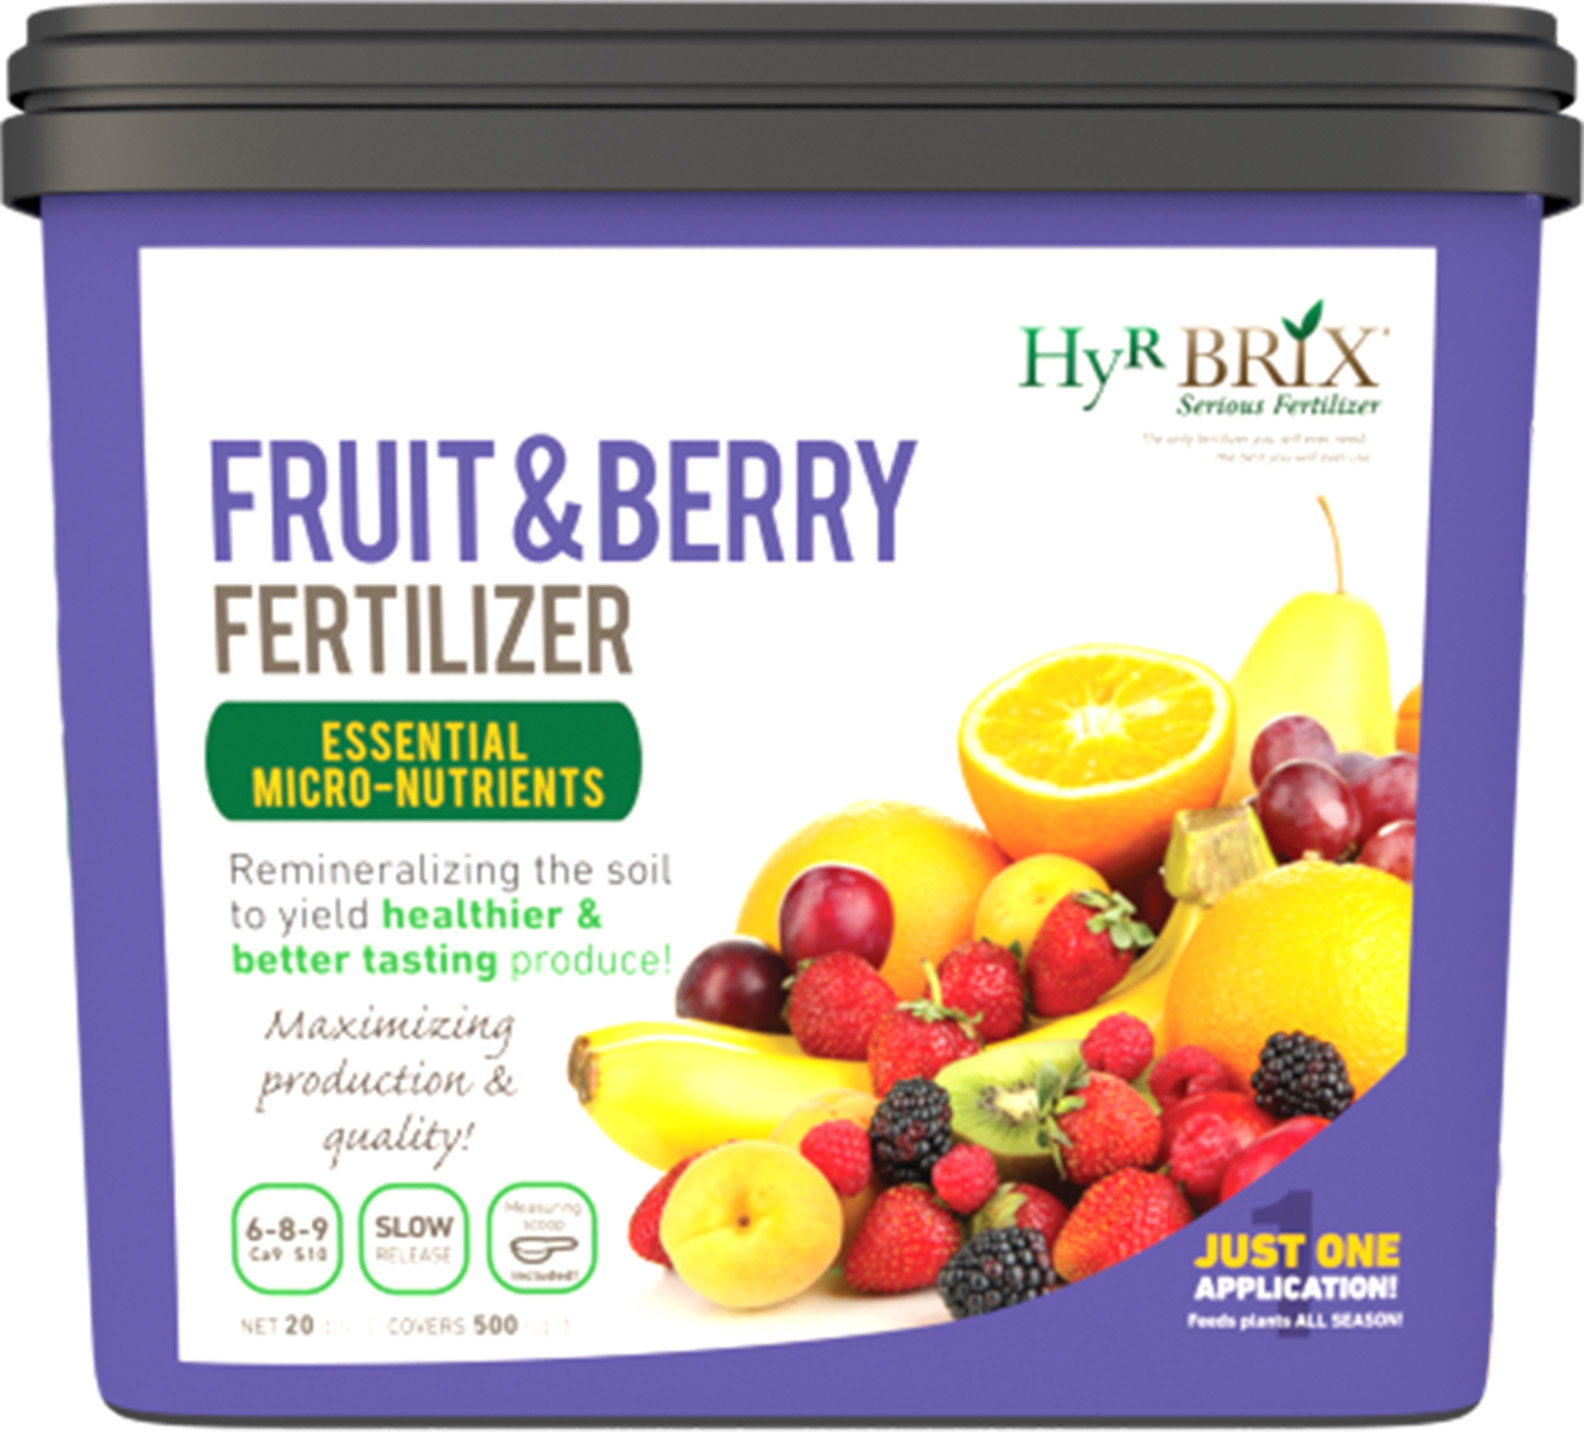 HyR BRIX® Fruit & Berry Fertilizer 6-8-9 Ca9 S10- 20 lb Pail